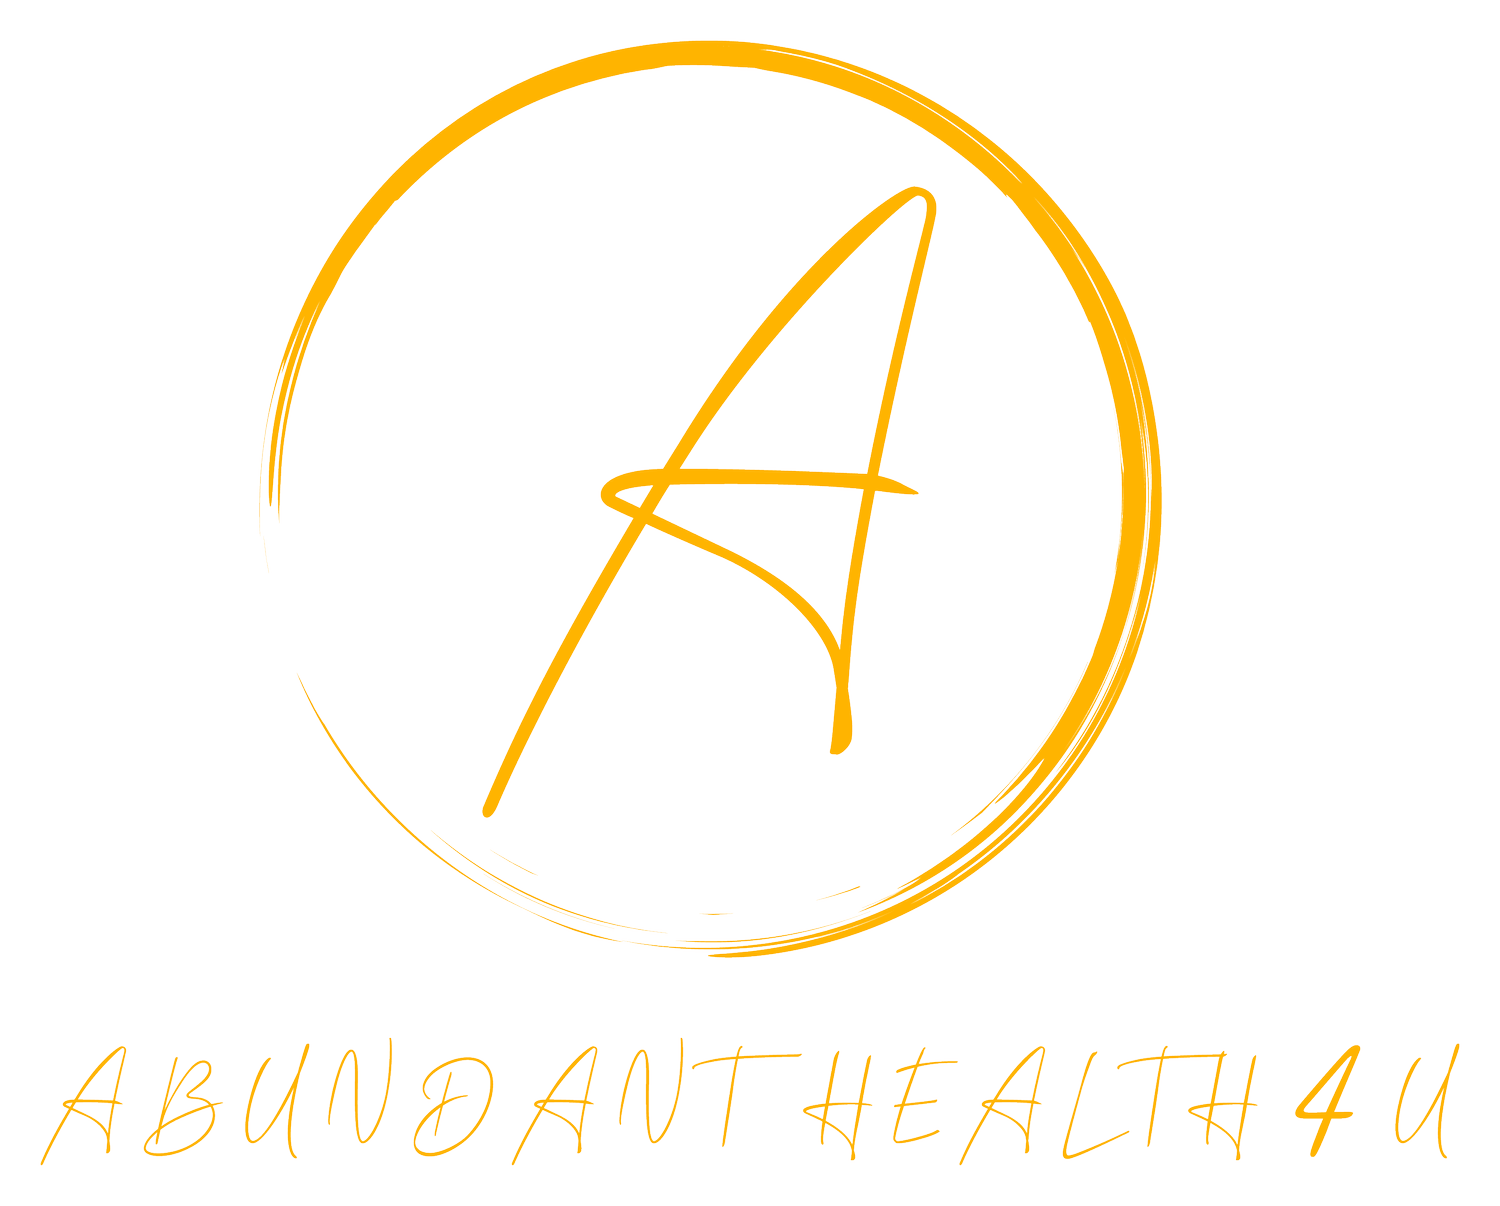 Abundant Health 4 U